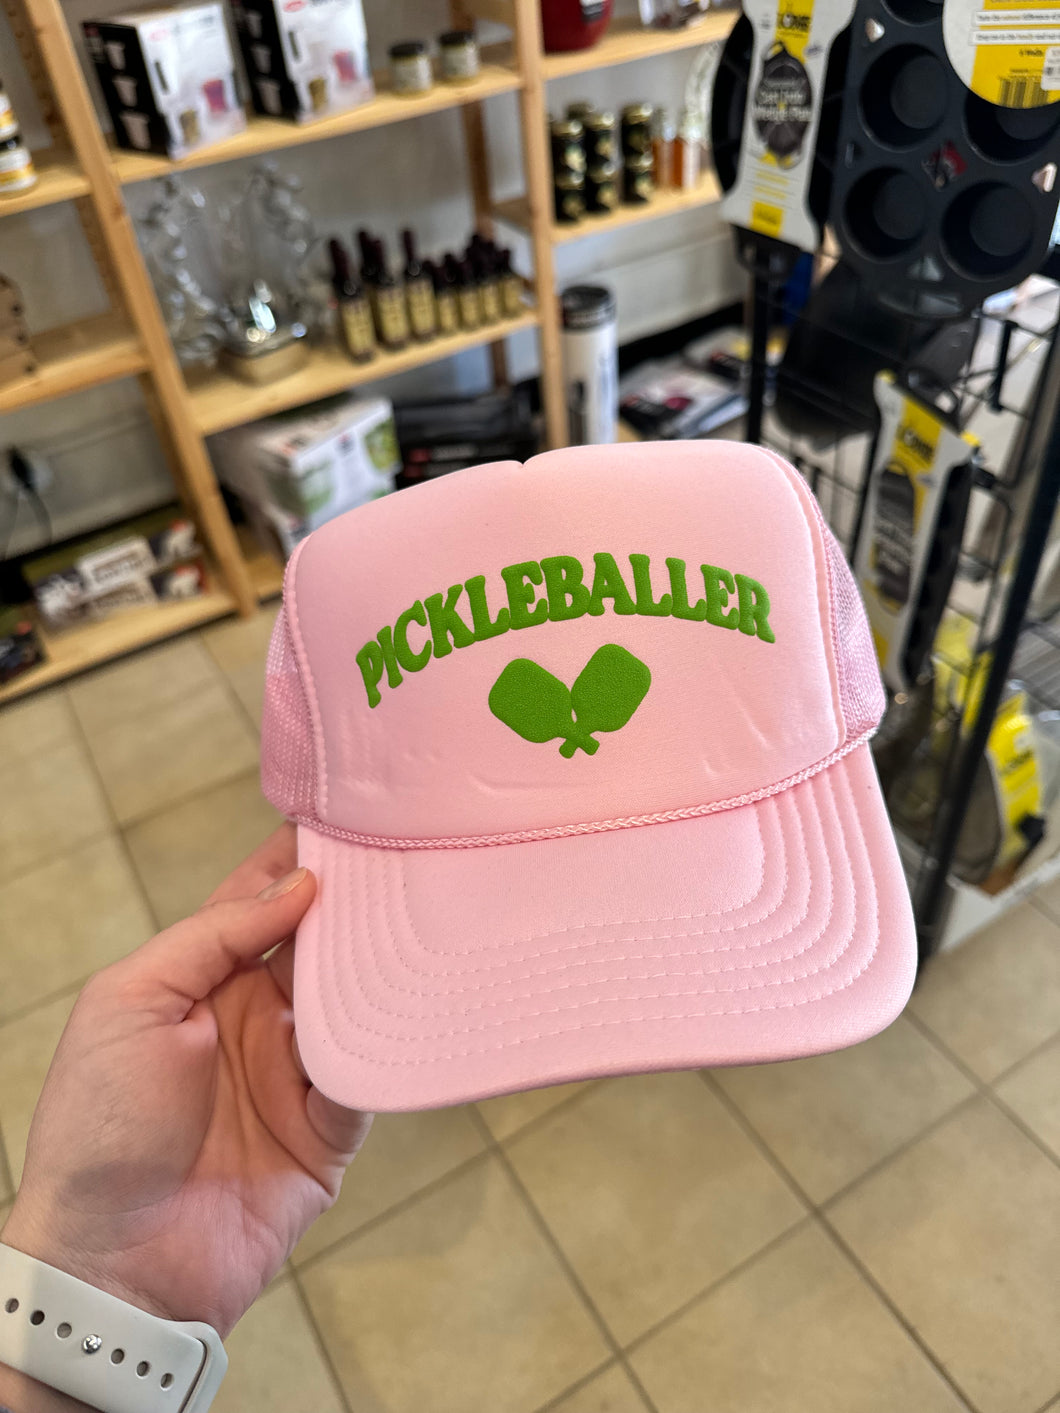 Pickleballer Trucker hat